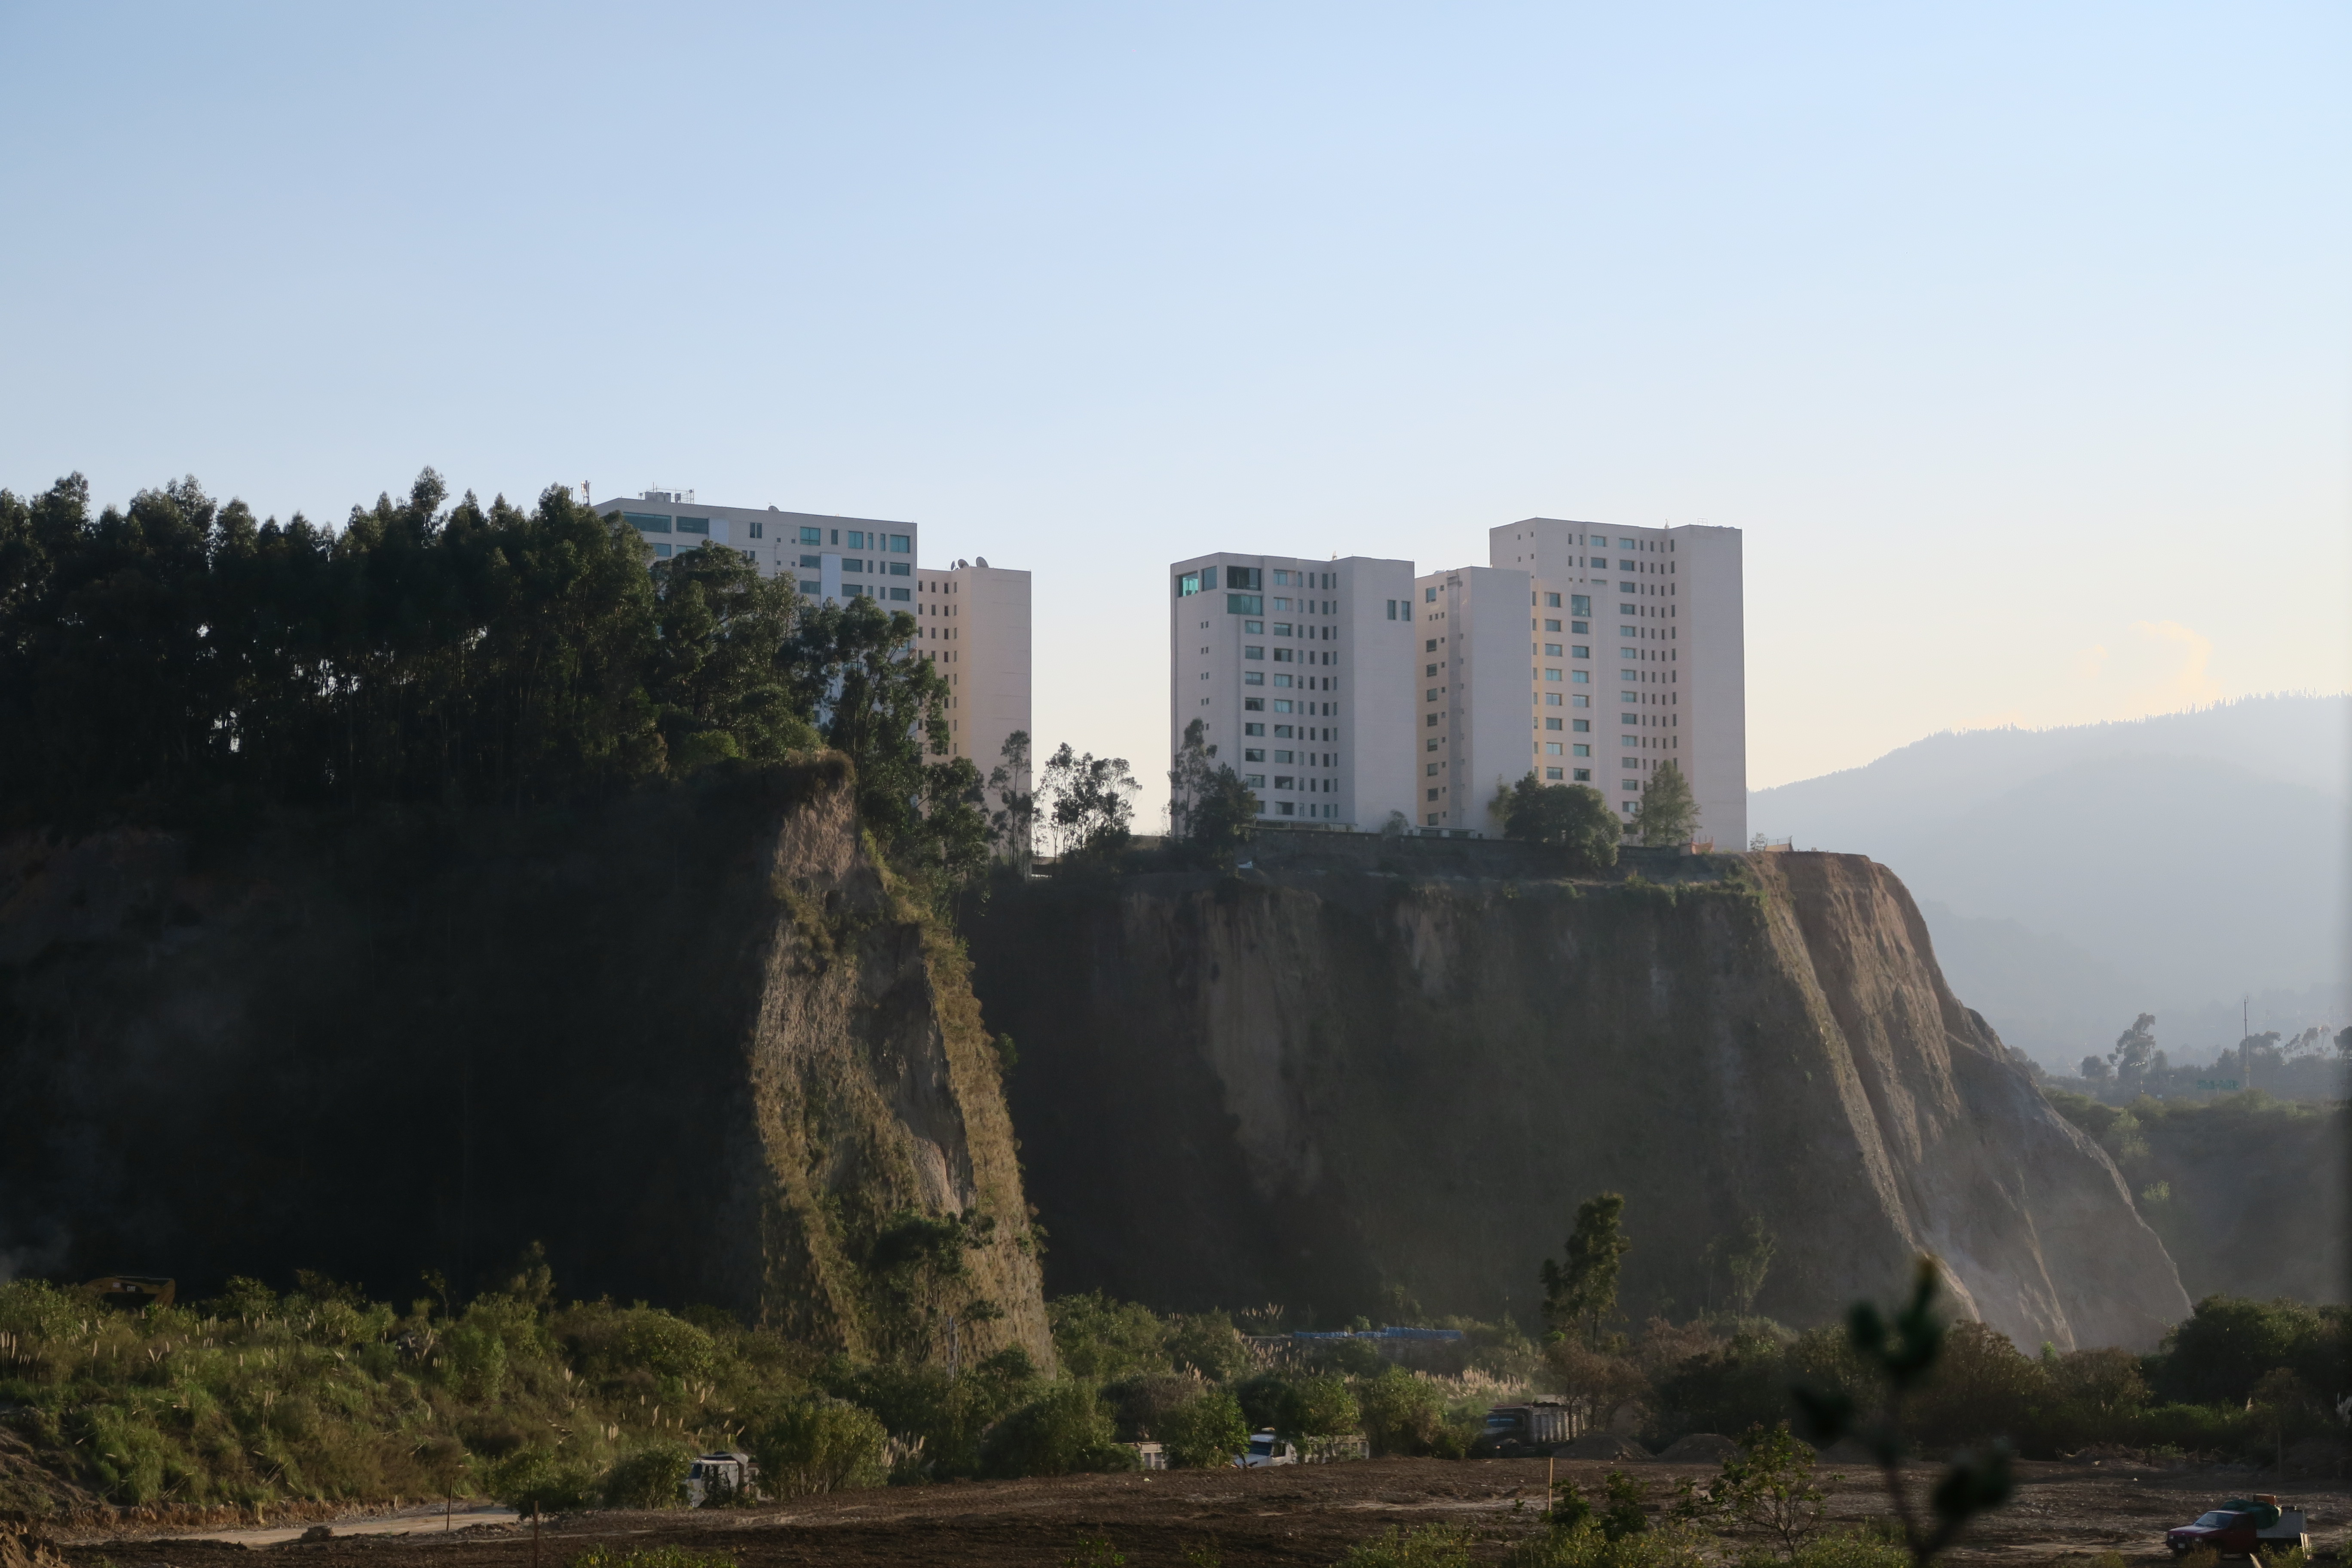 Vue sur des buildings construits en haut des falaises de Mexico City